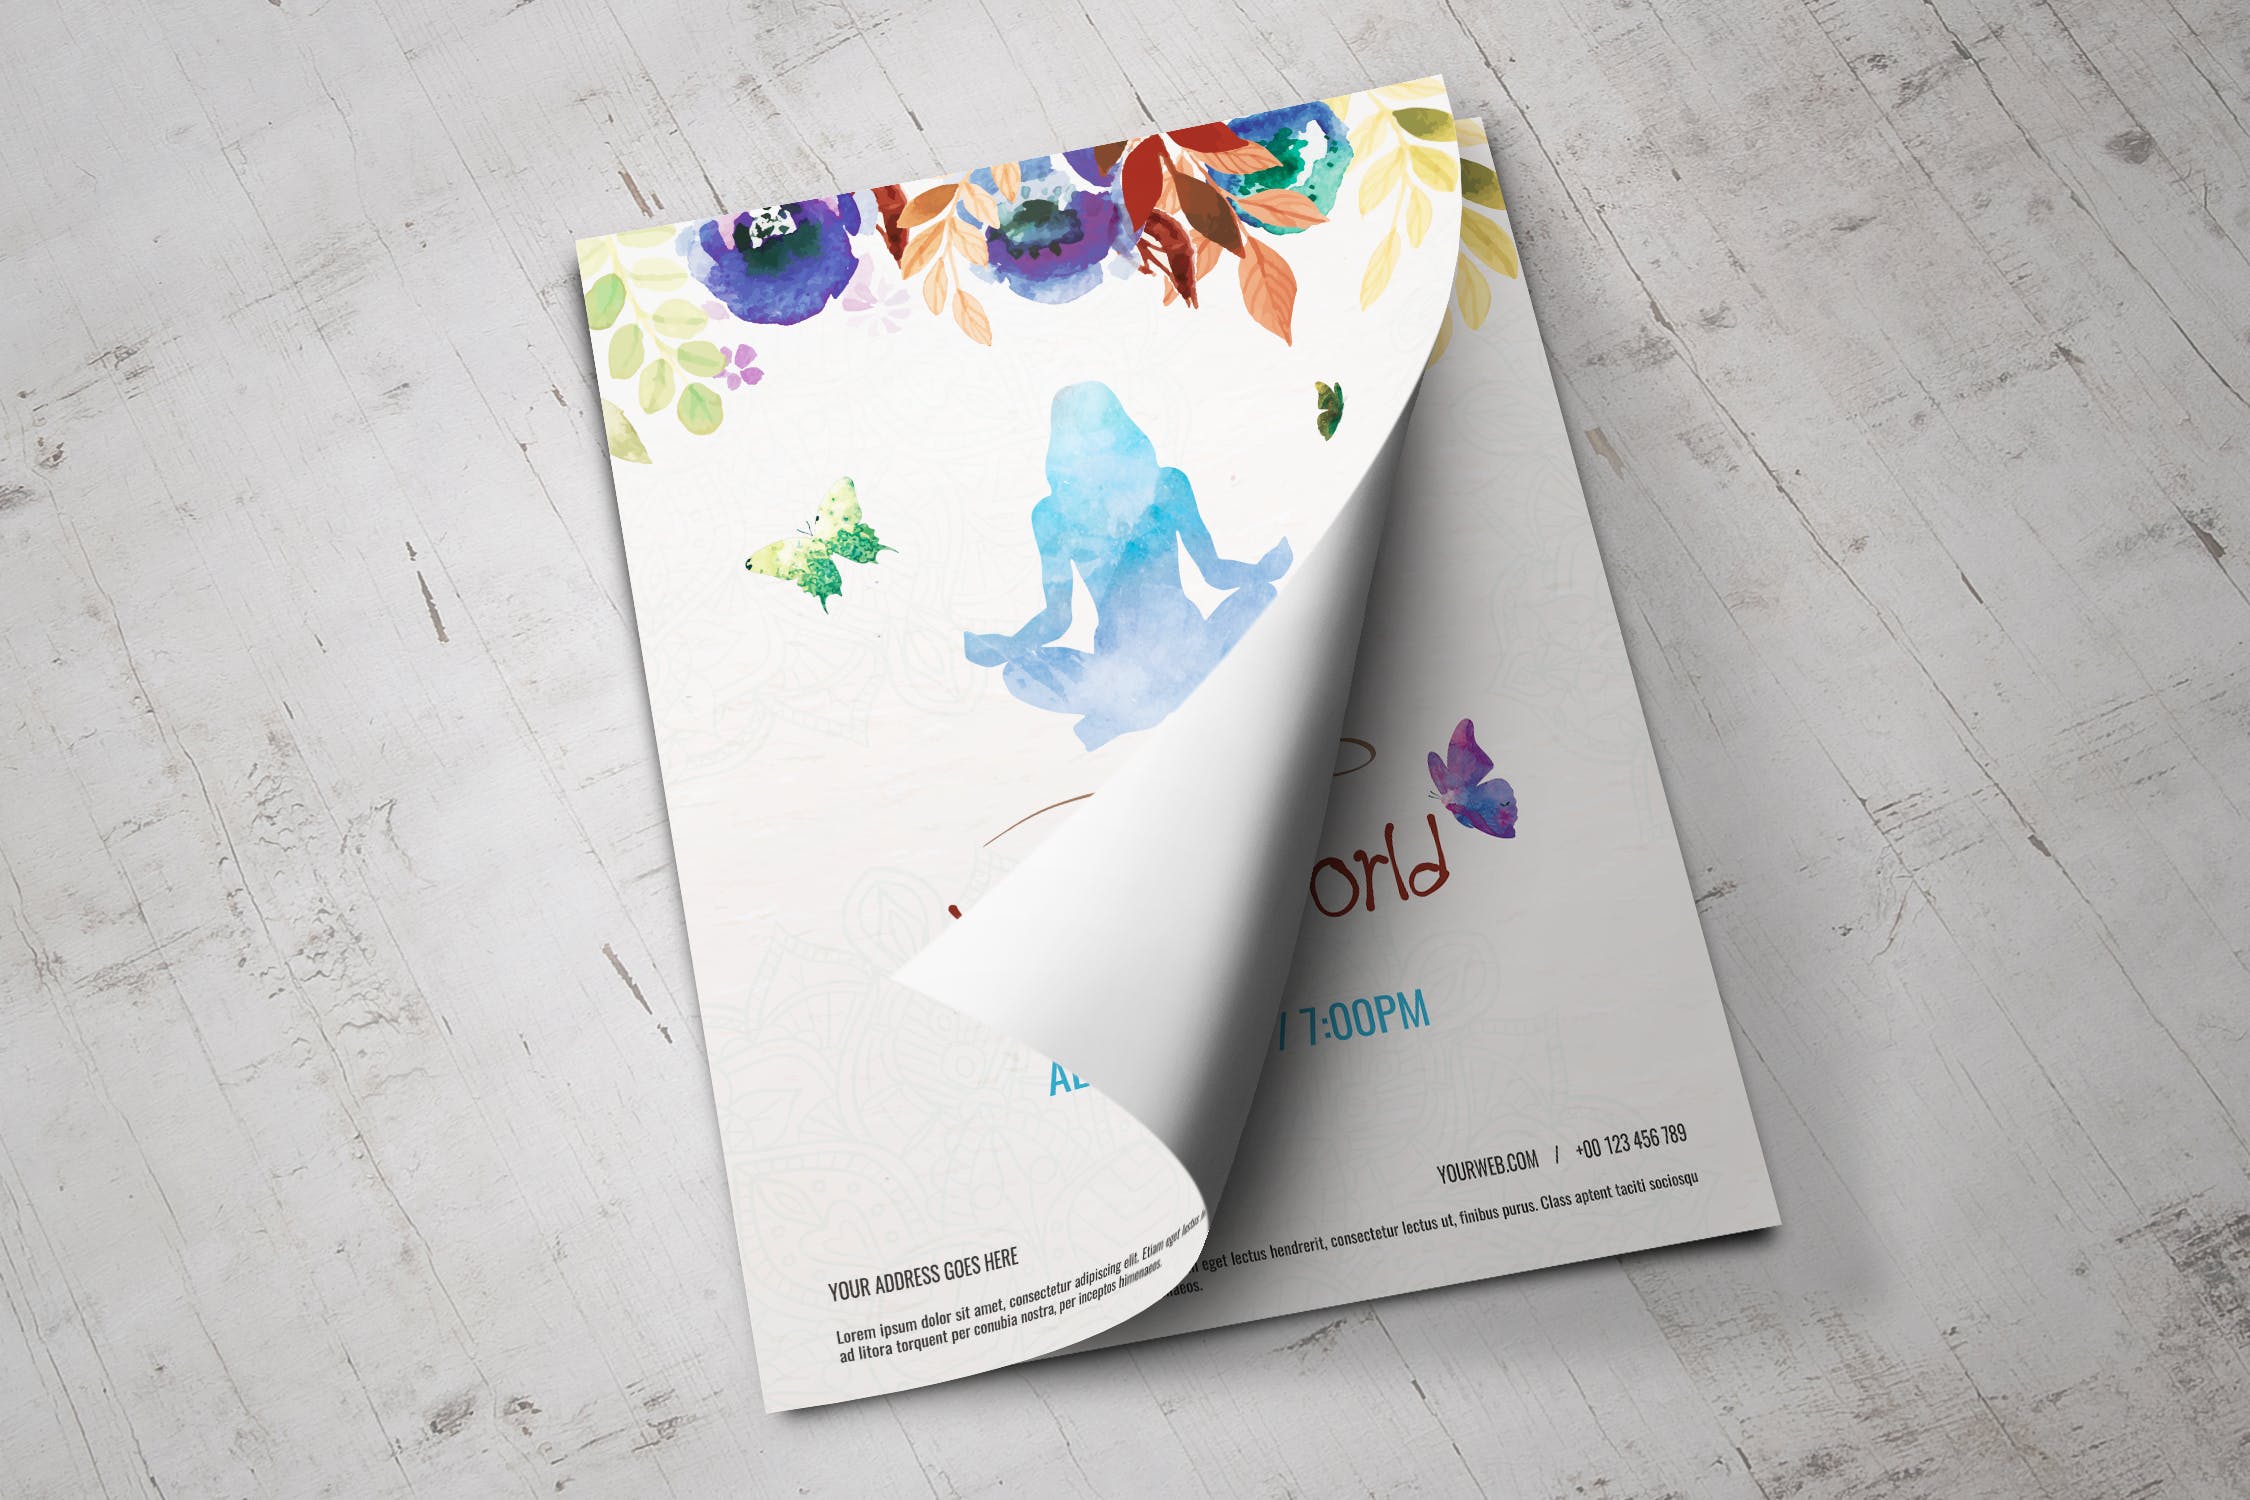 多彩水彩手绘设计风格瑜伽主题活动海报传单模板 Colorful Hand Painted Yoga World Flyer插图(3)